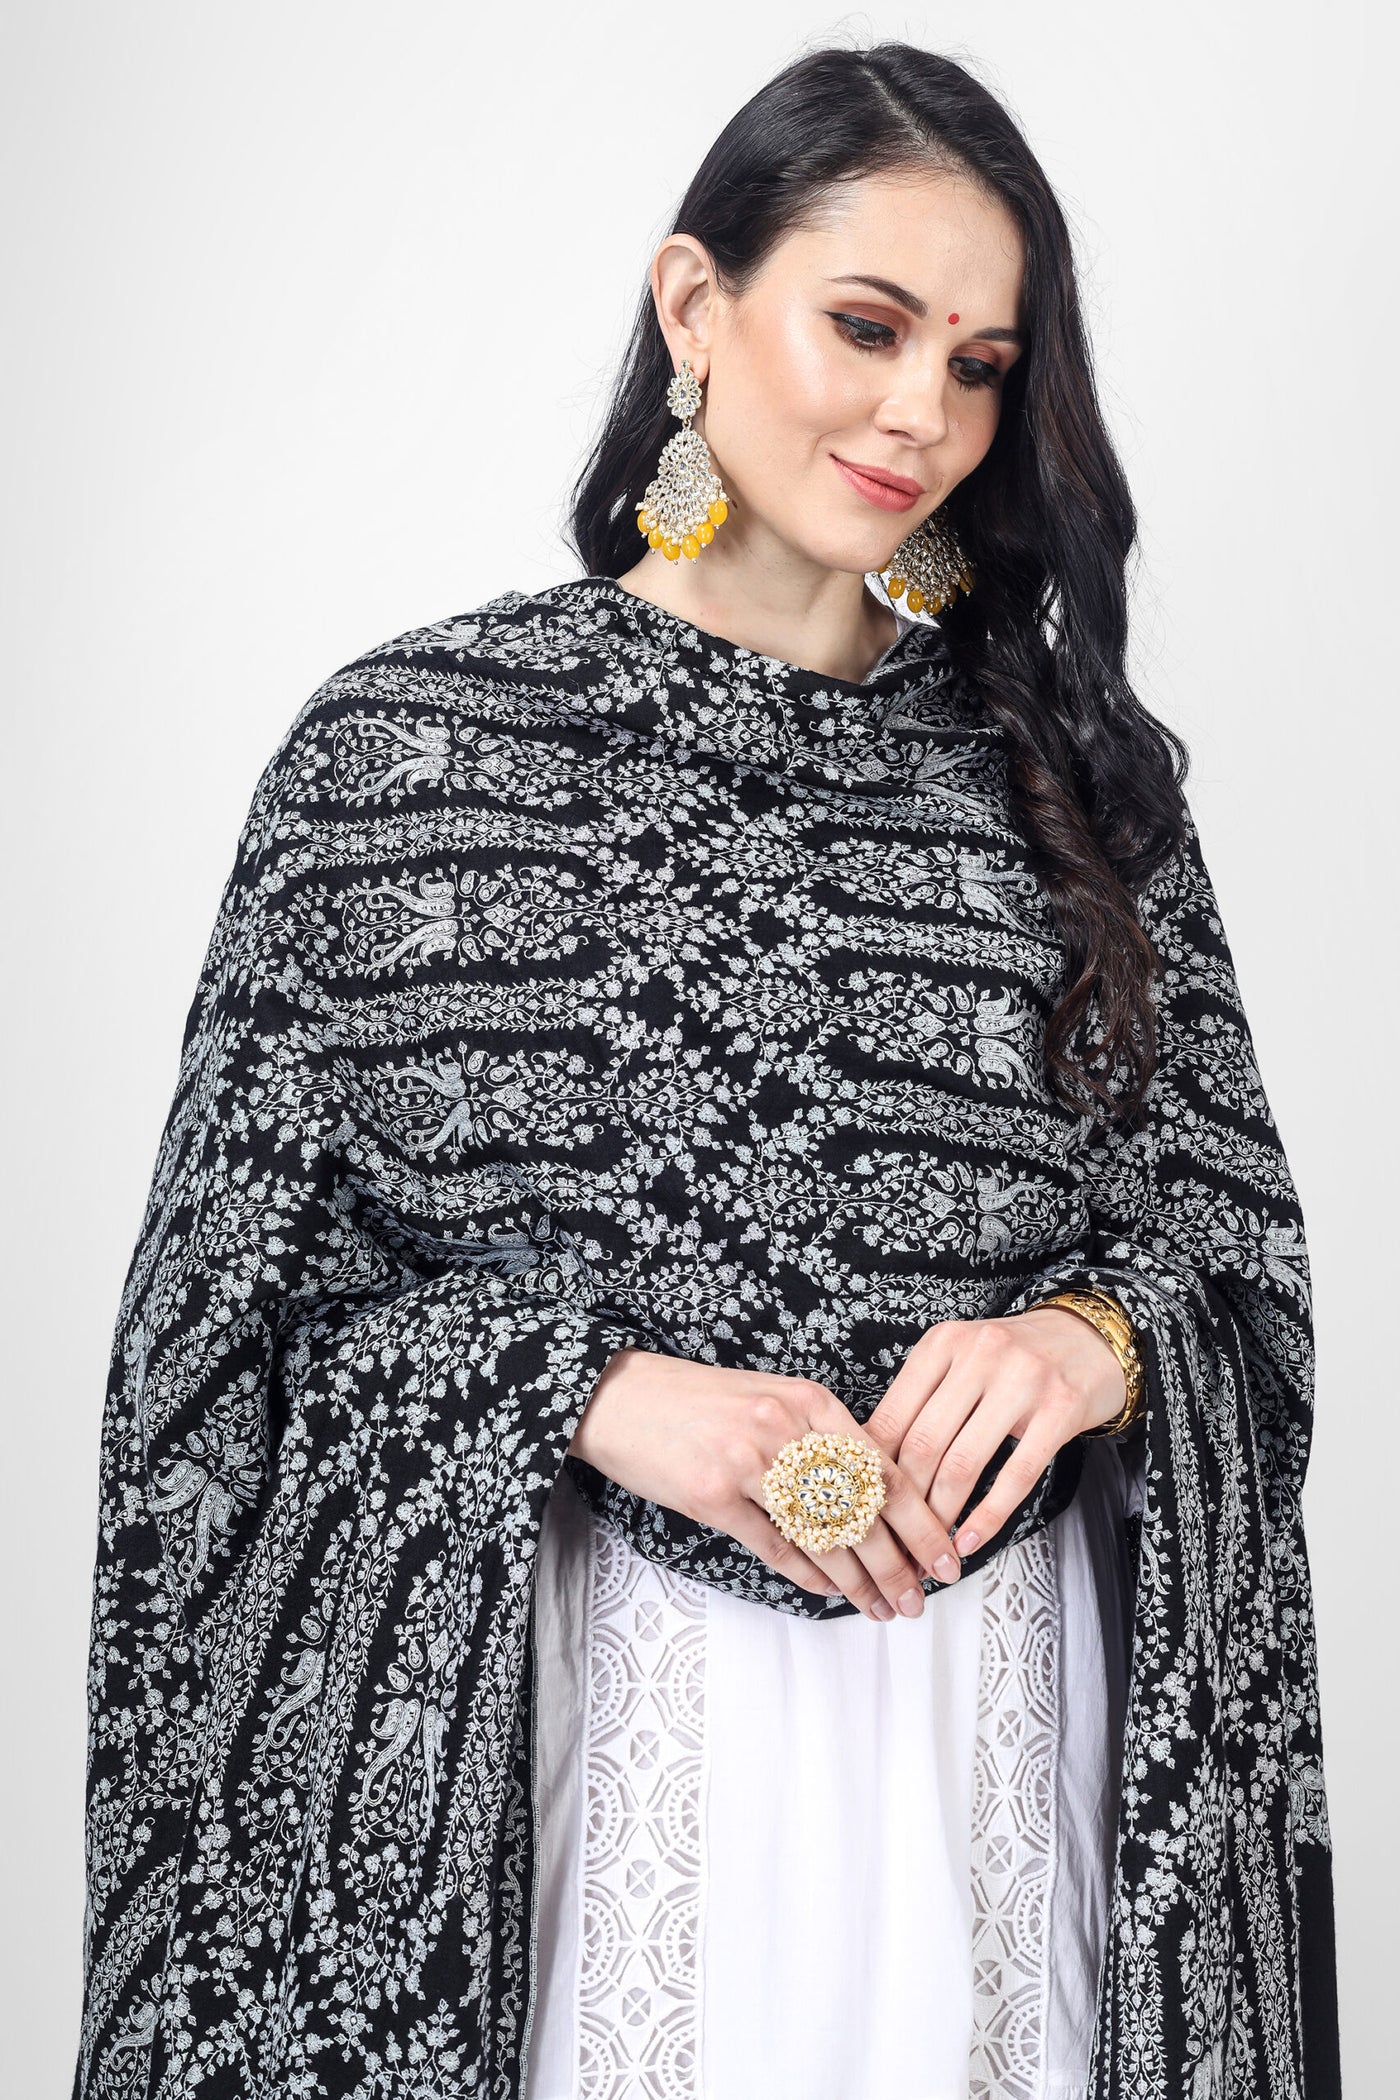 Black Pashmina Mehraab sozni Jama shawl